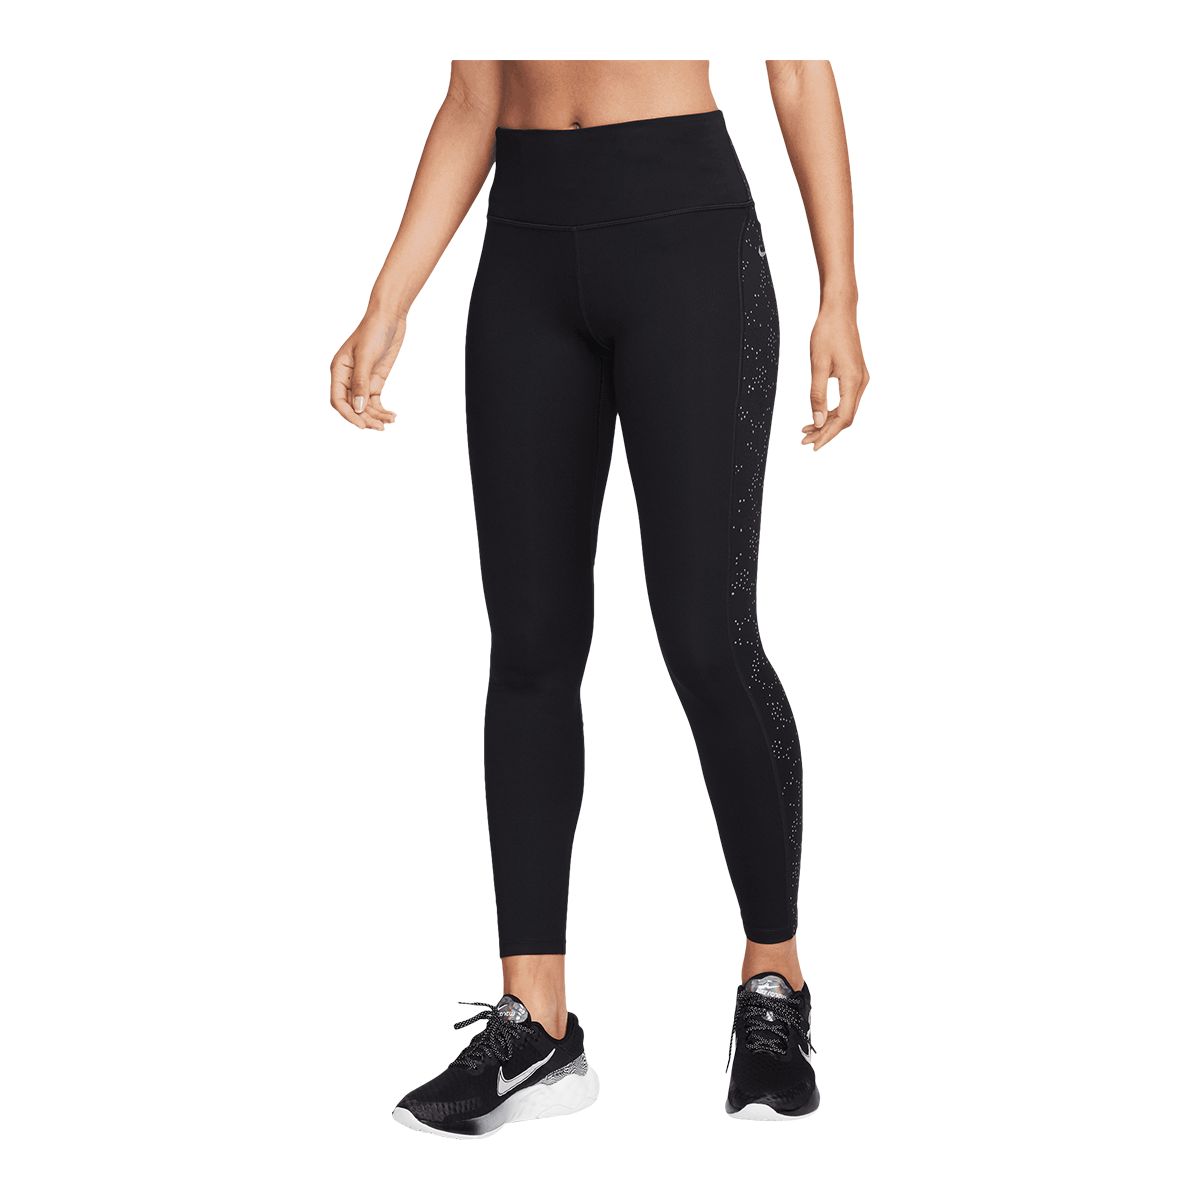 Women's leggings Nike One Dri-Fit Mid-Rise 7/8 Tight - black/white